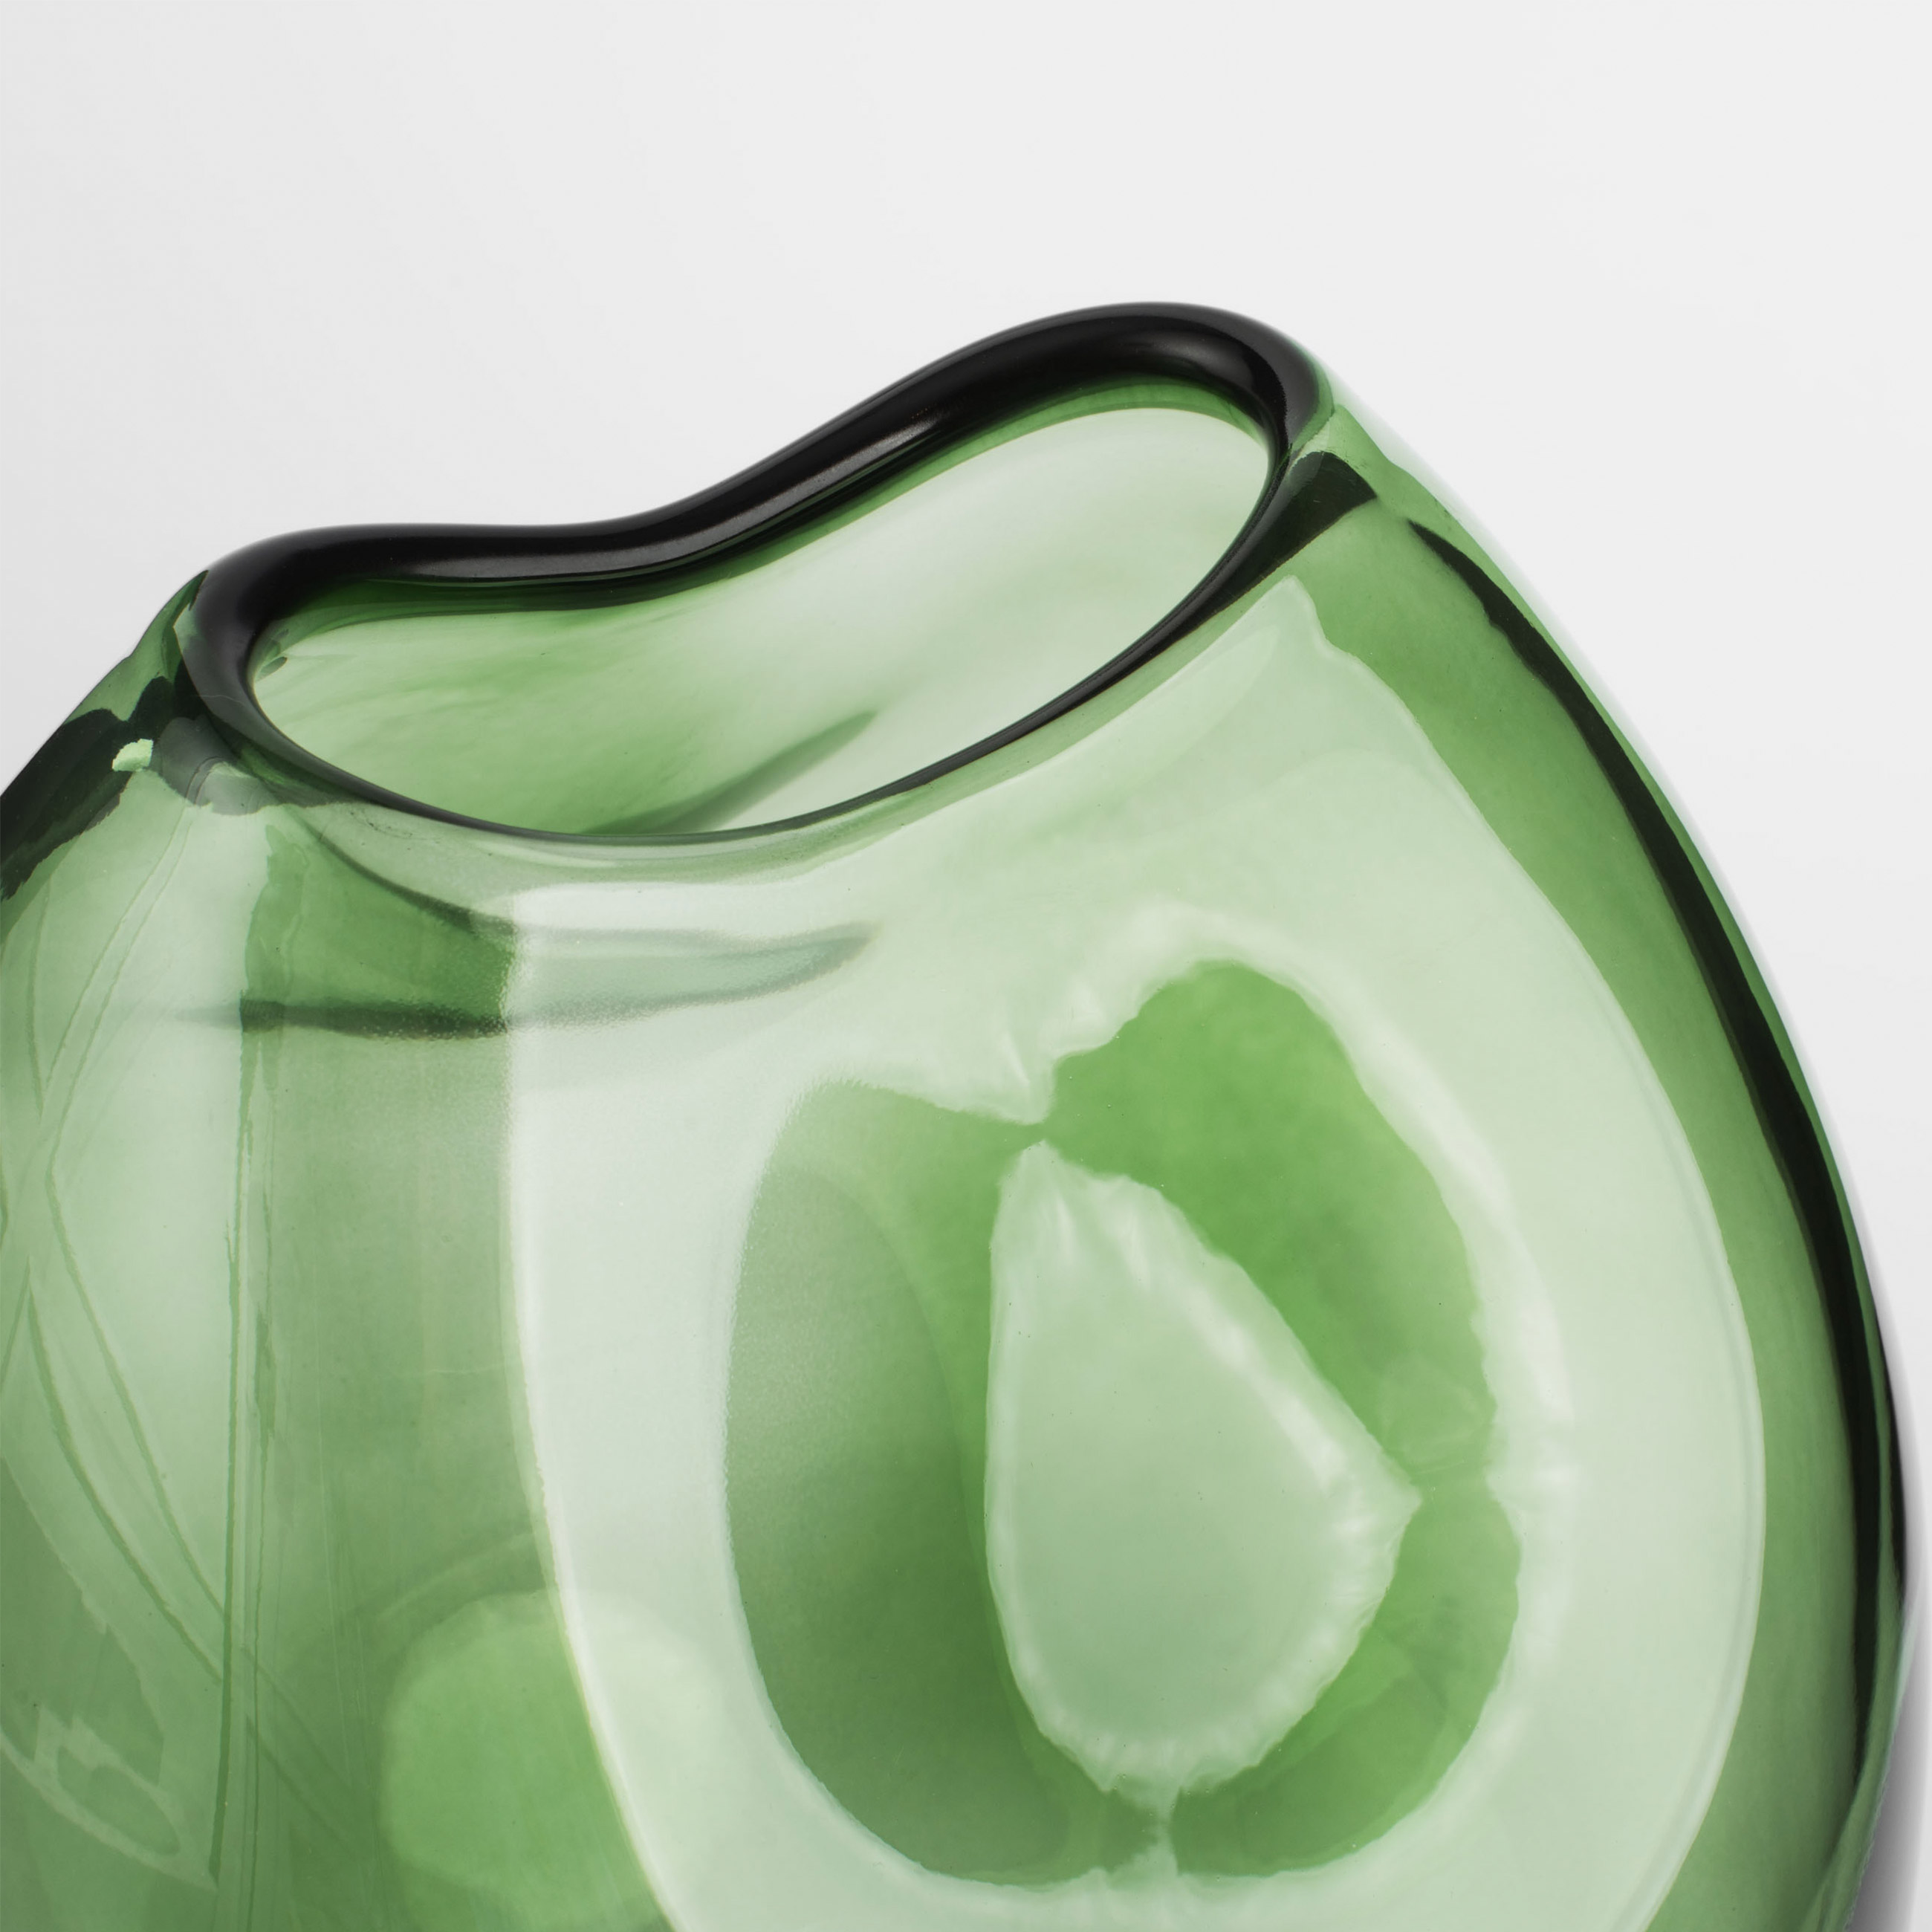 Flower vase, 25 cm, glass, green, Clear color изображение № 4